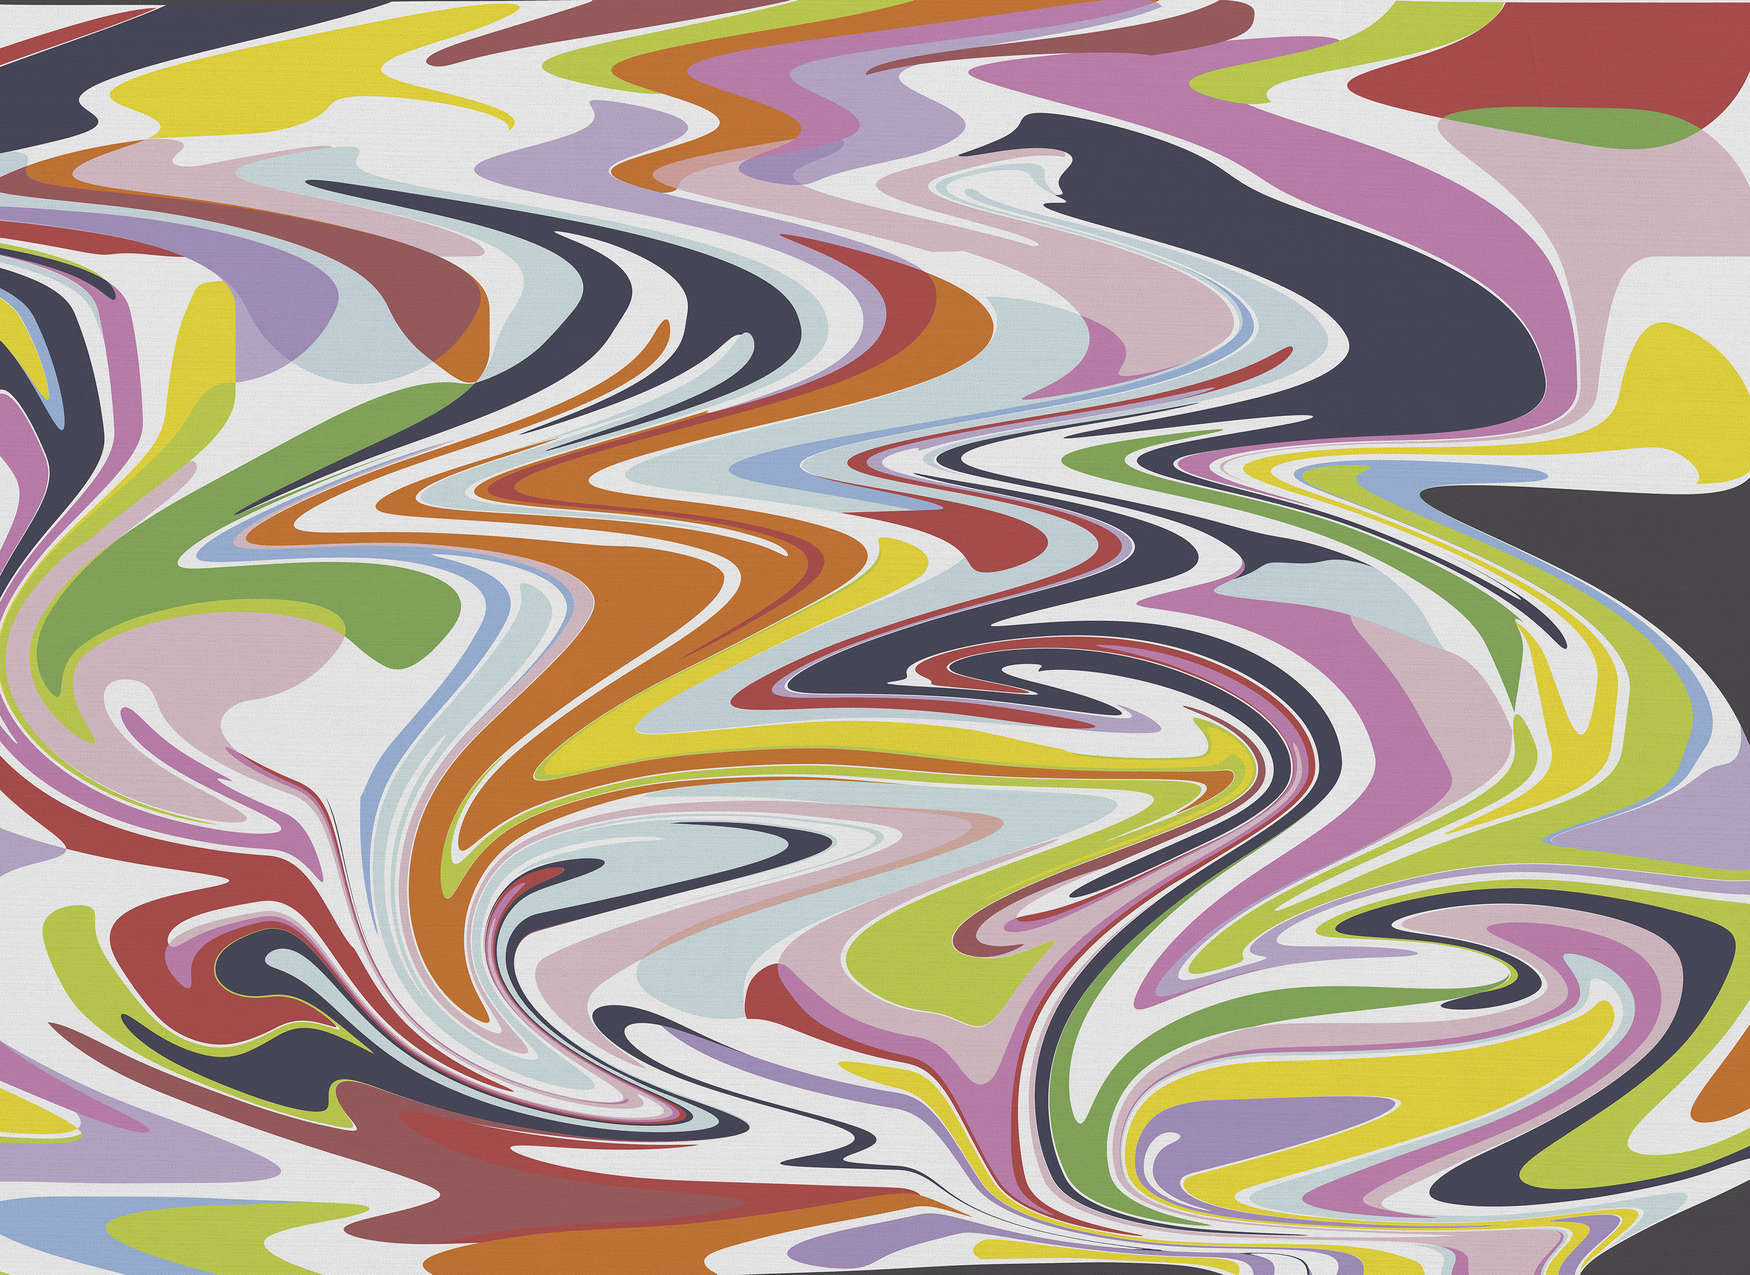             Mural de pared abstracto con mezcla de colores - Multicolor
        